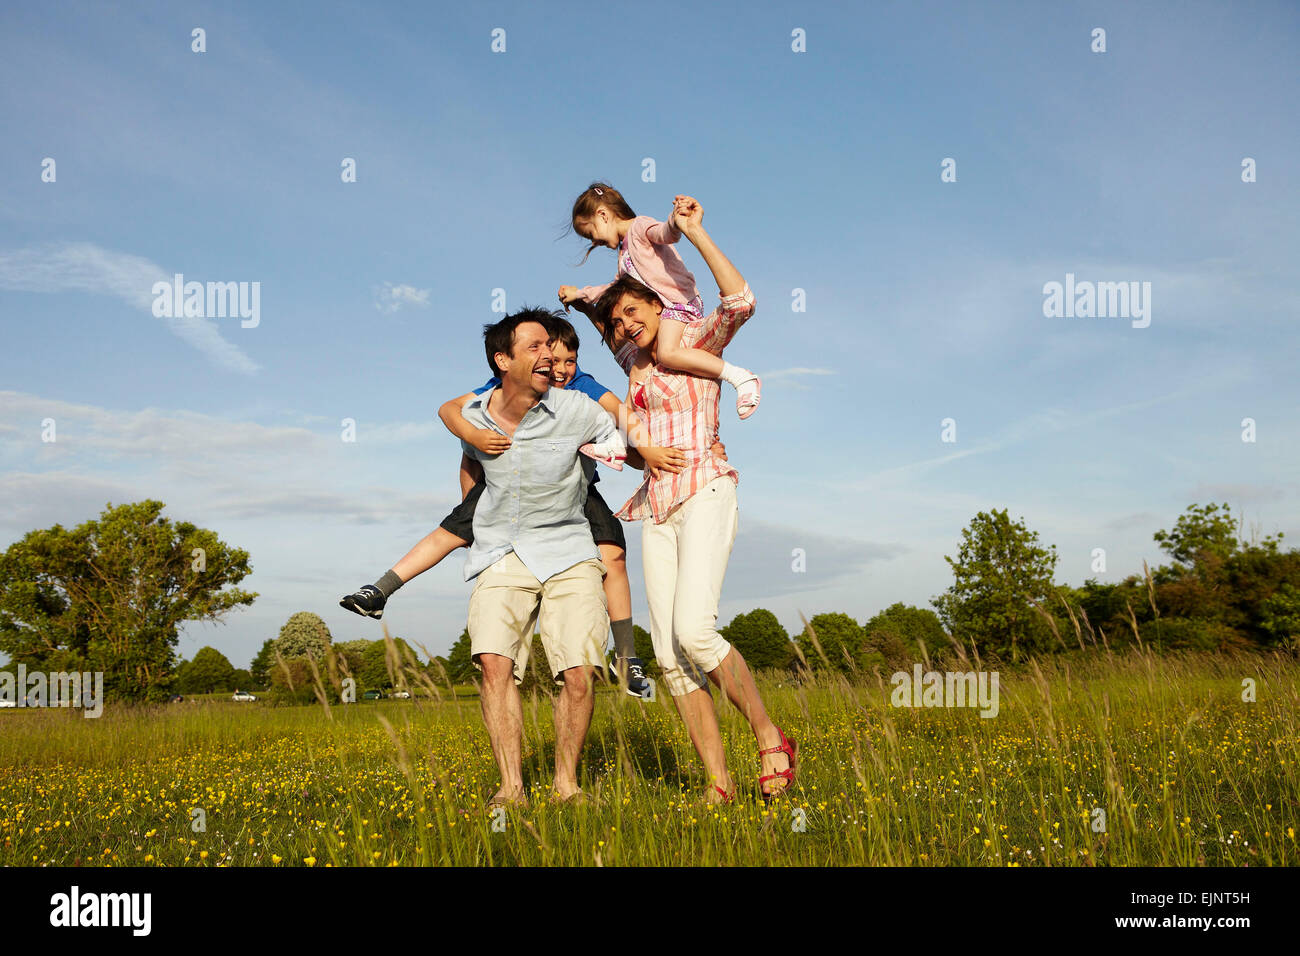 Una familia, dos padres afuera en el verano dando se superpone a dos niños. Foto de stock